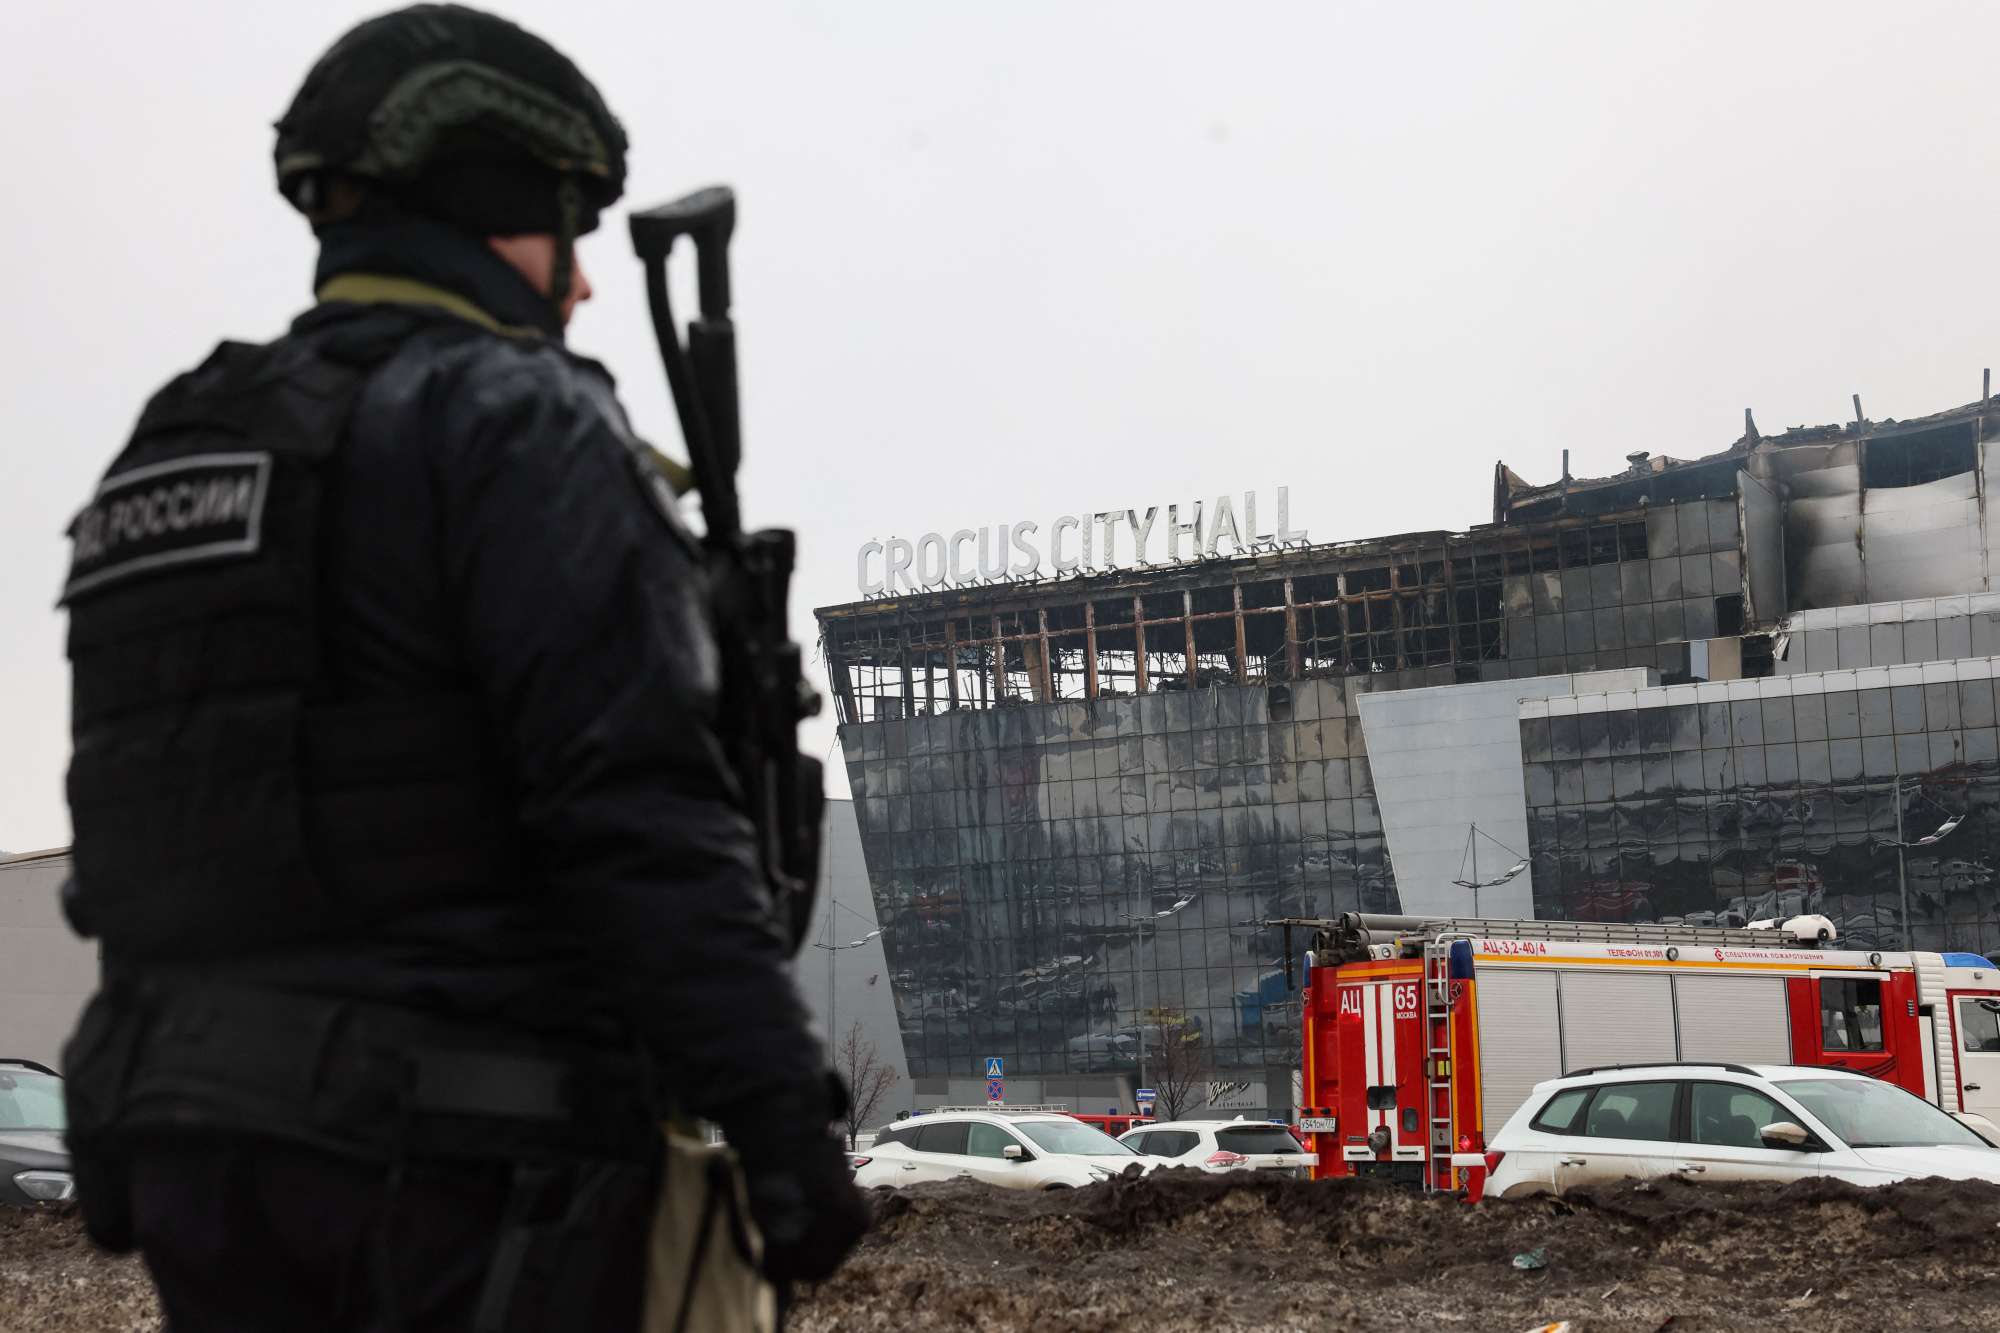 Անկարան Մոսկվային է փոխանցել «Կրոկուս Սիթի Հոլլ»-ի ահաբեկիչների մասին տվյալներ